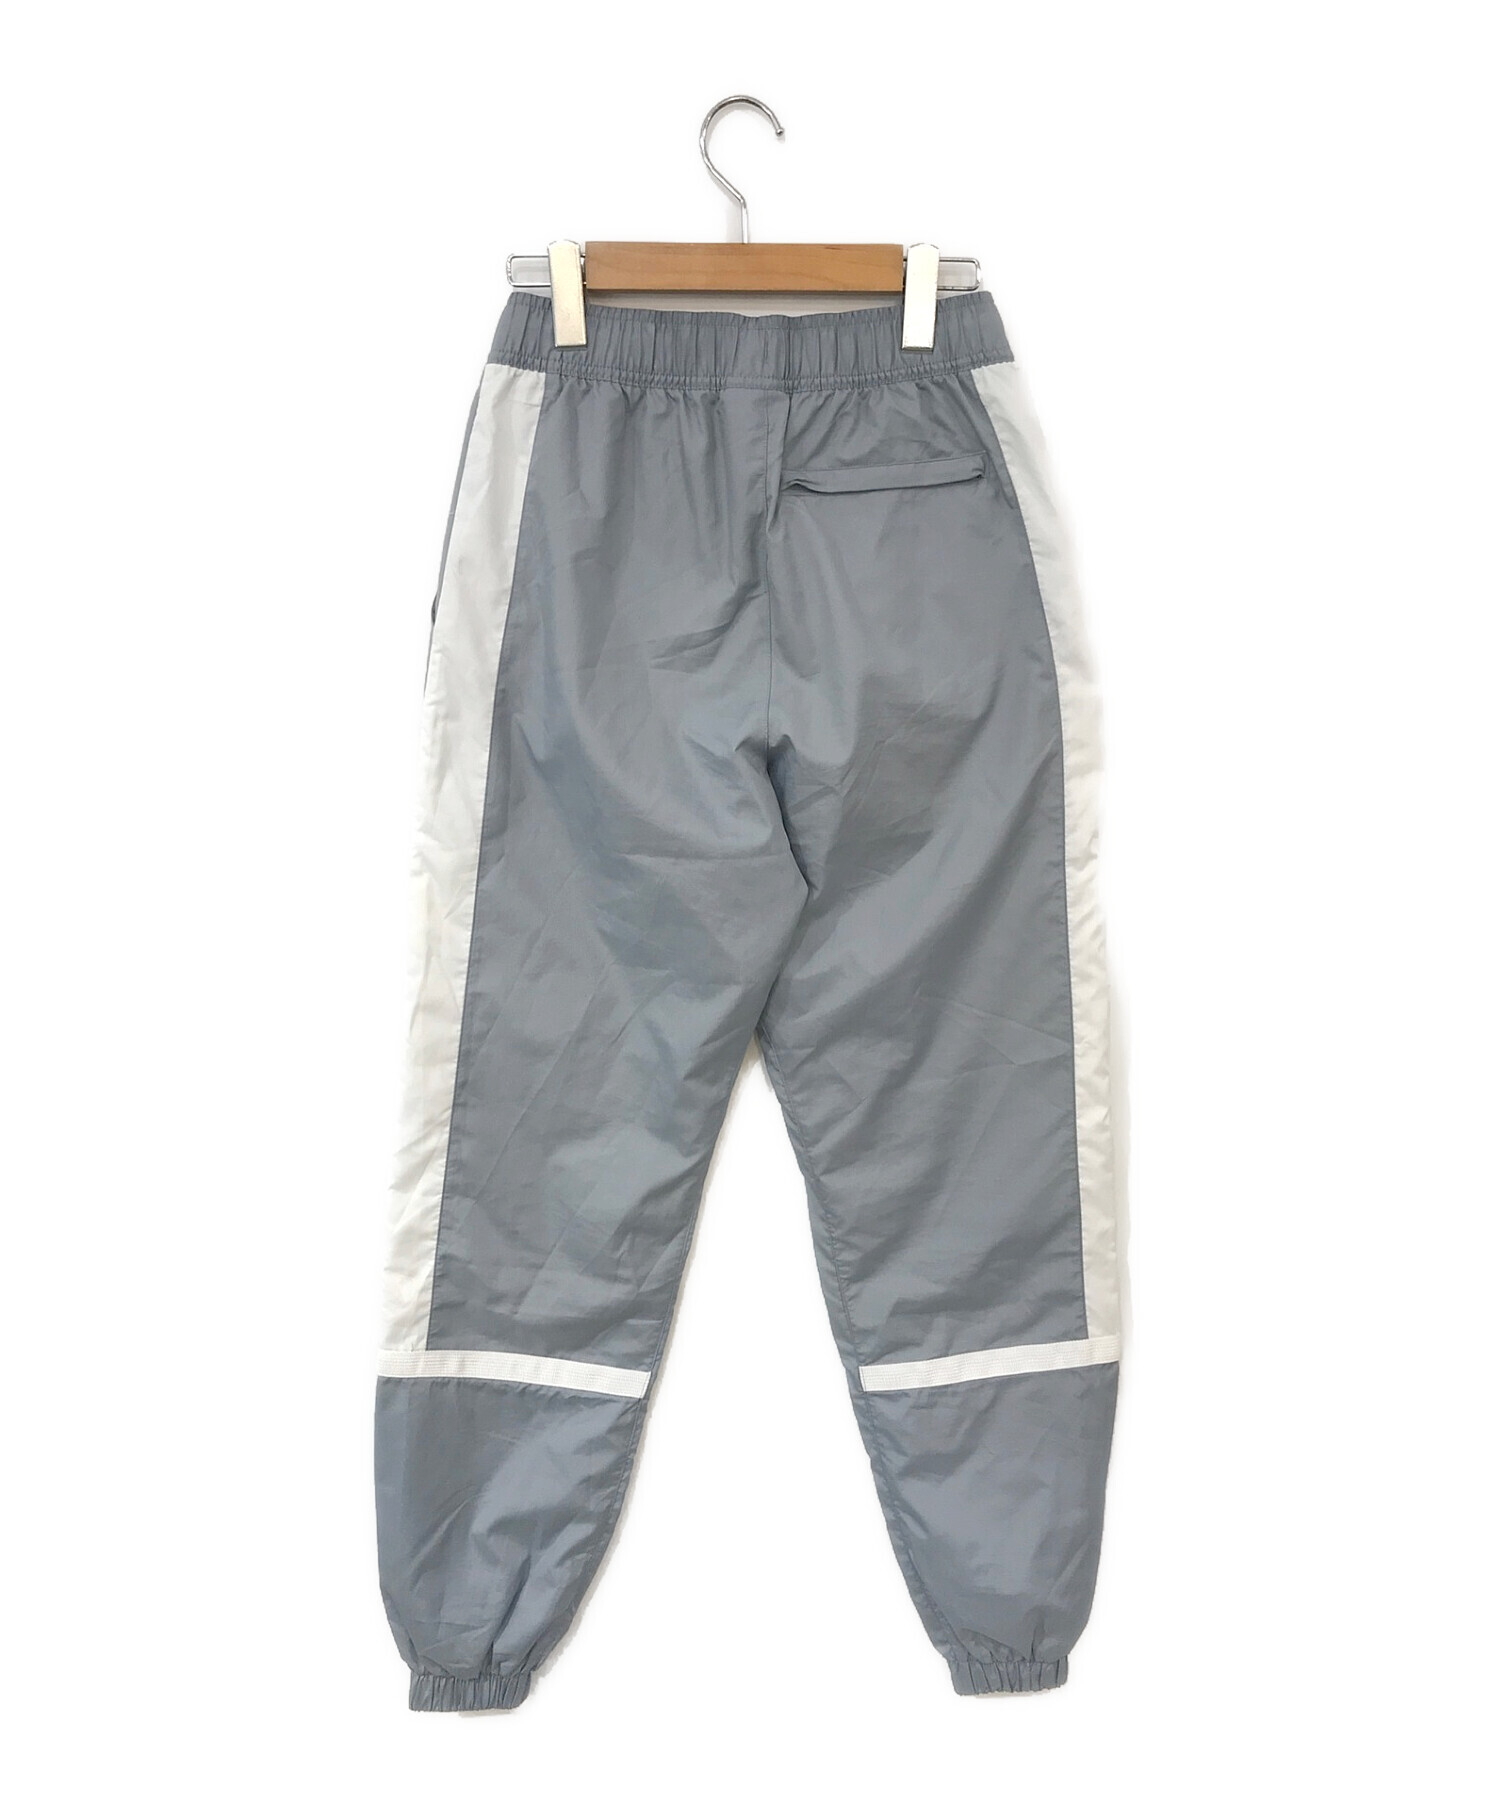 海外Sサイズ【新品】JORDAN PSG suit pants ナイロン パンツ